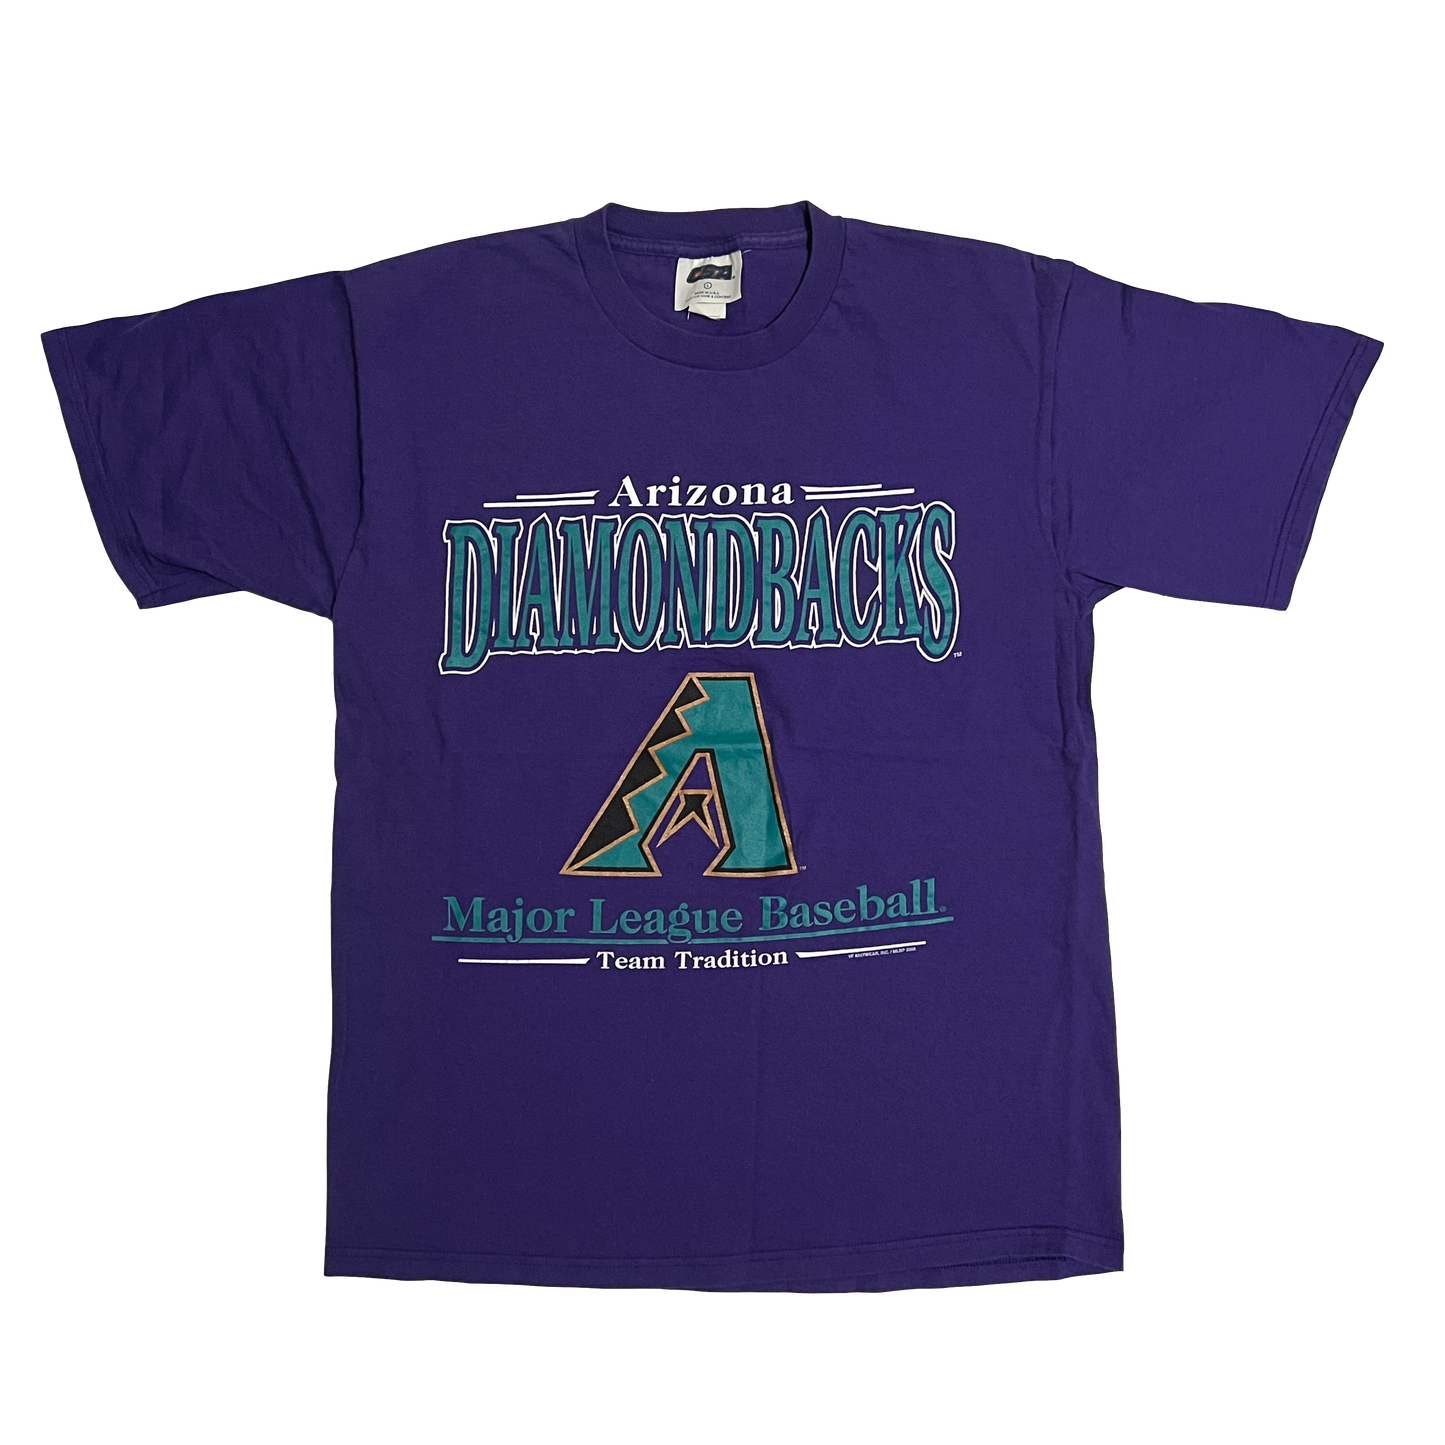 2000 Arizona Diamondbacks MLB Team Shirt - L